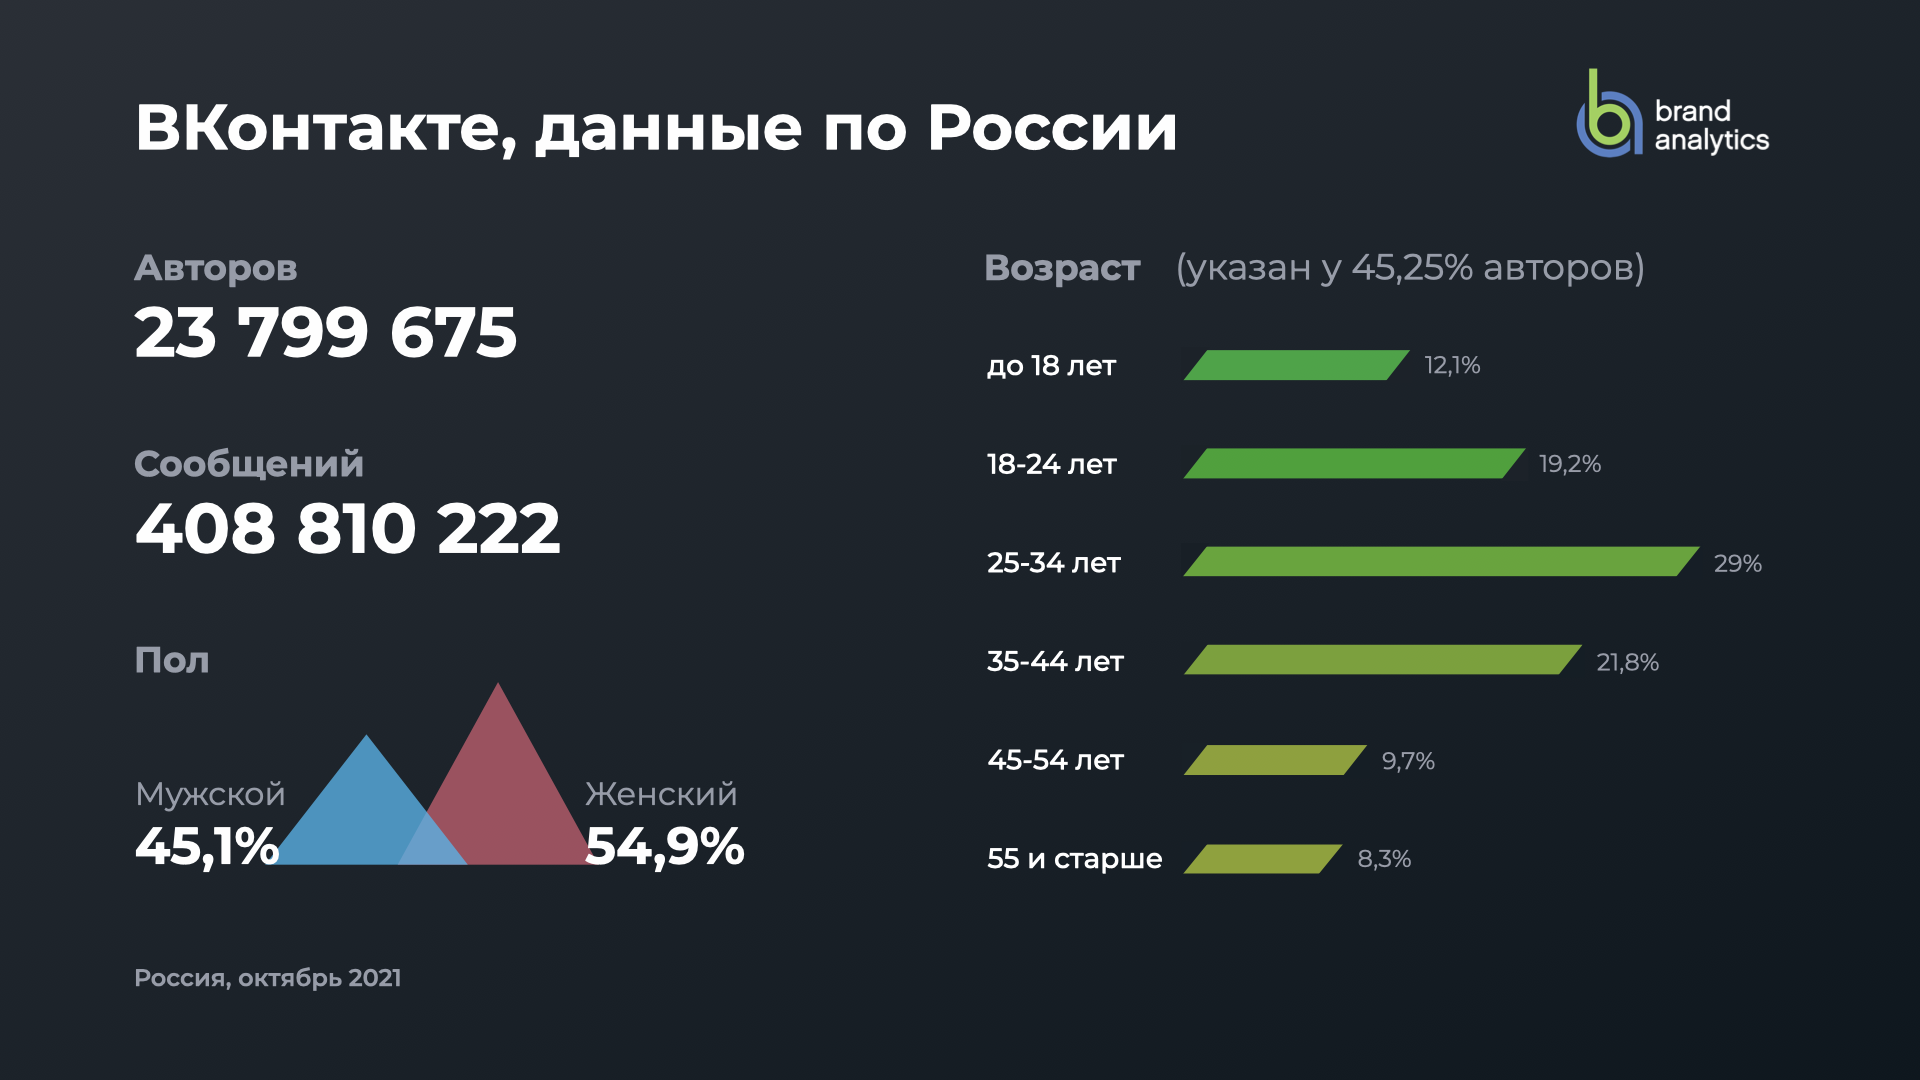 Аудитория социальных сетей. Аналитика бренда. Популярность социальных сетей. Аудитория социальных сетей в России.